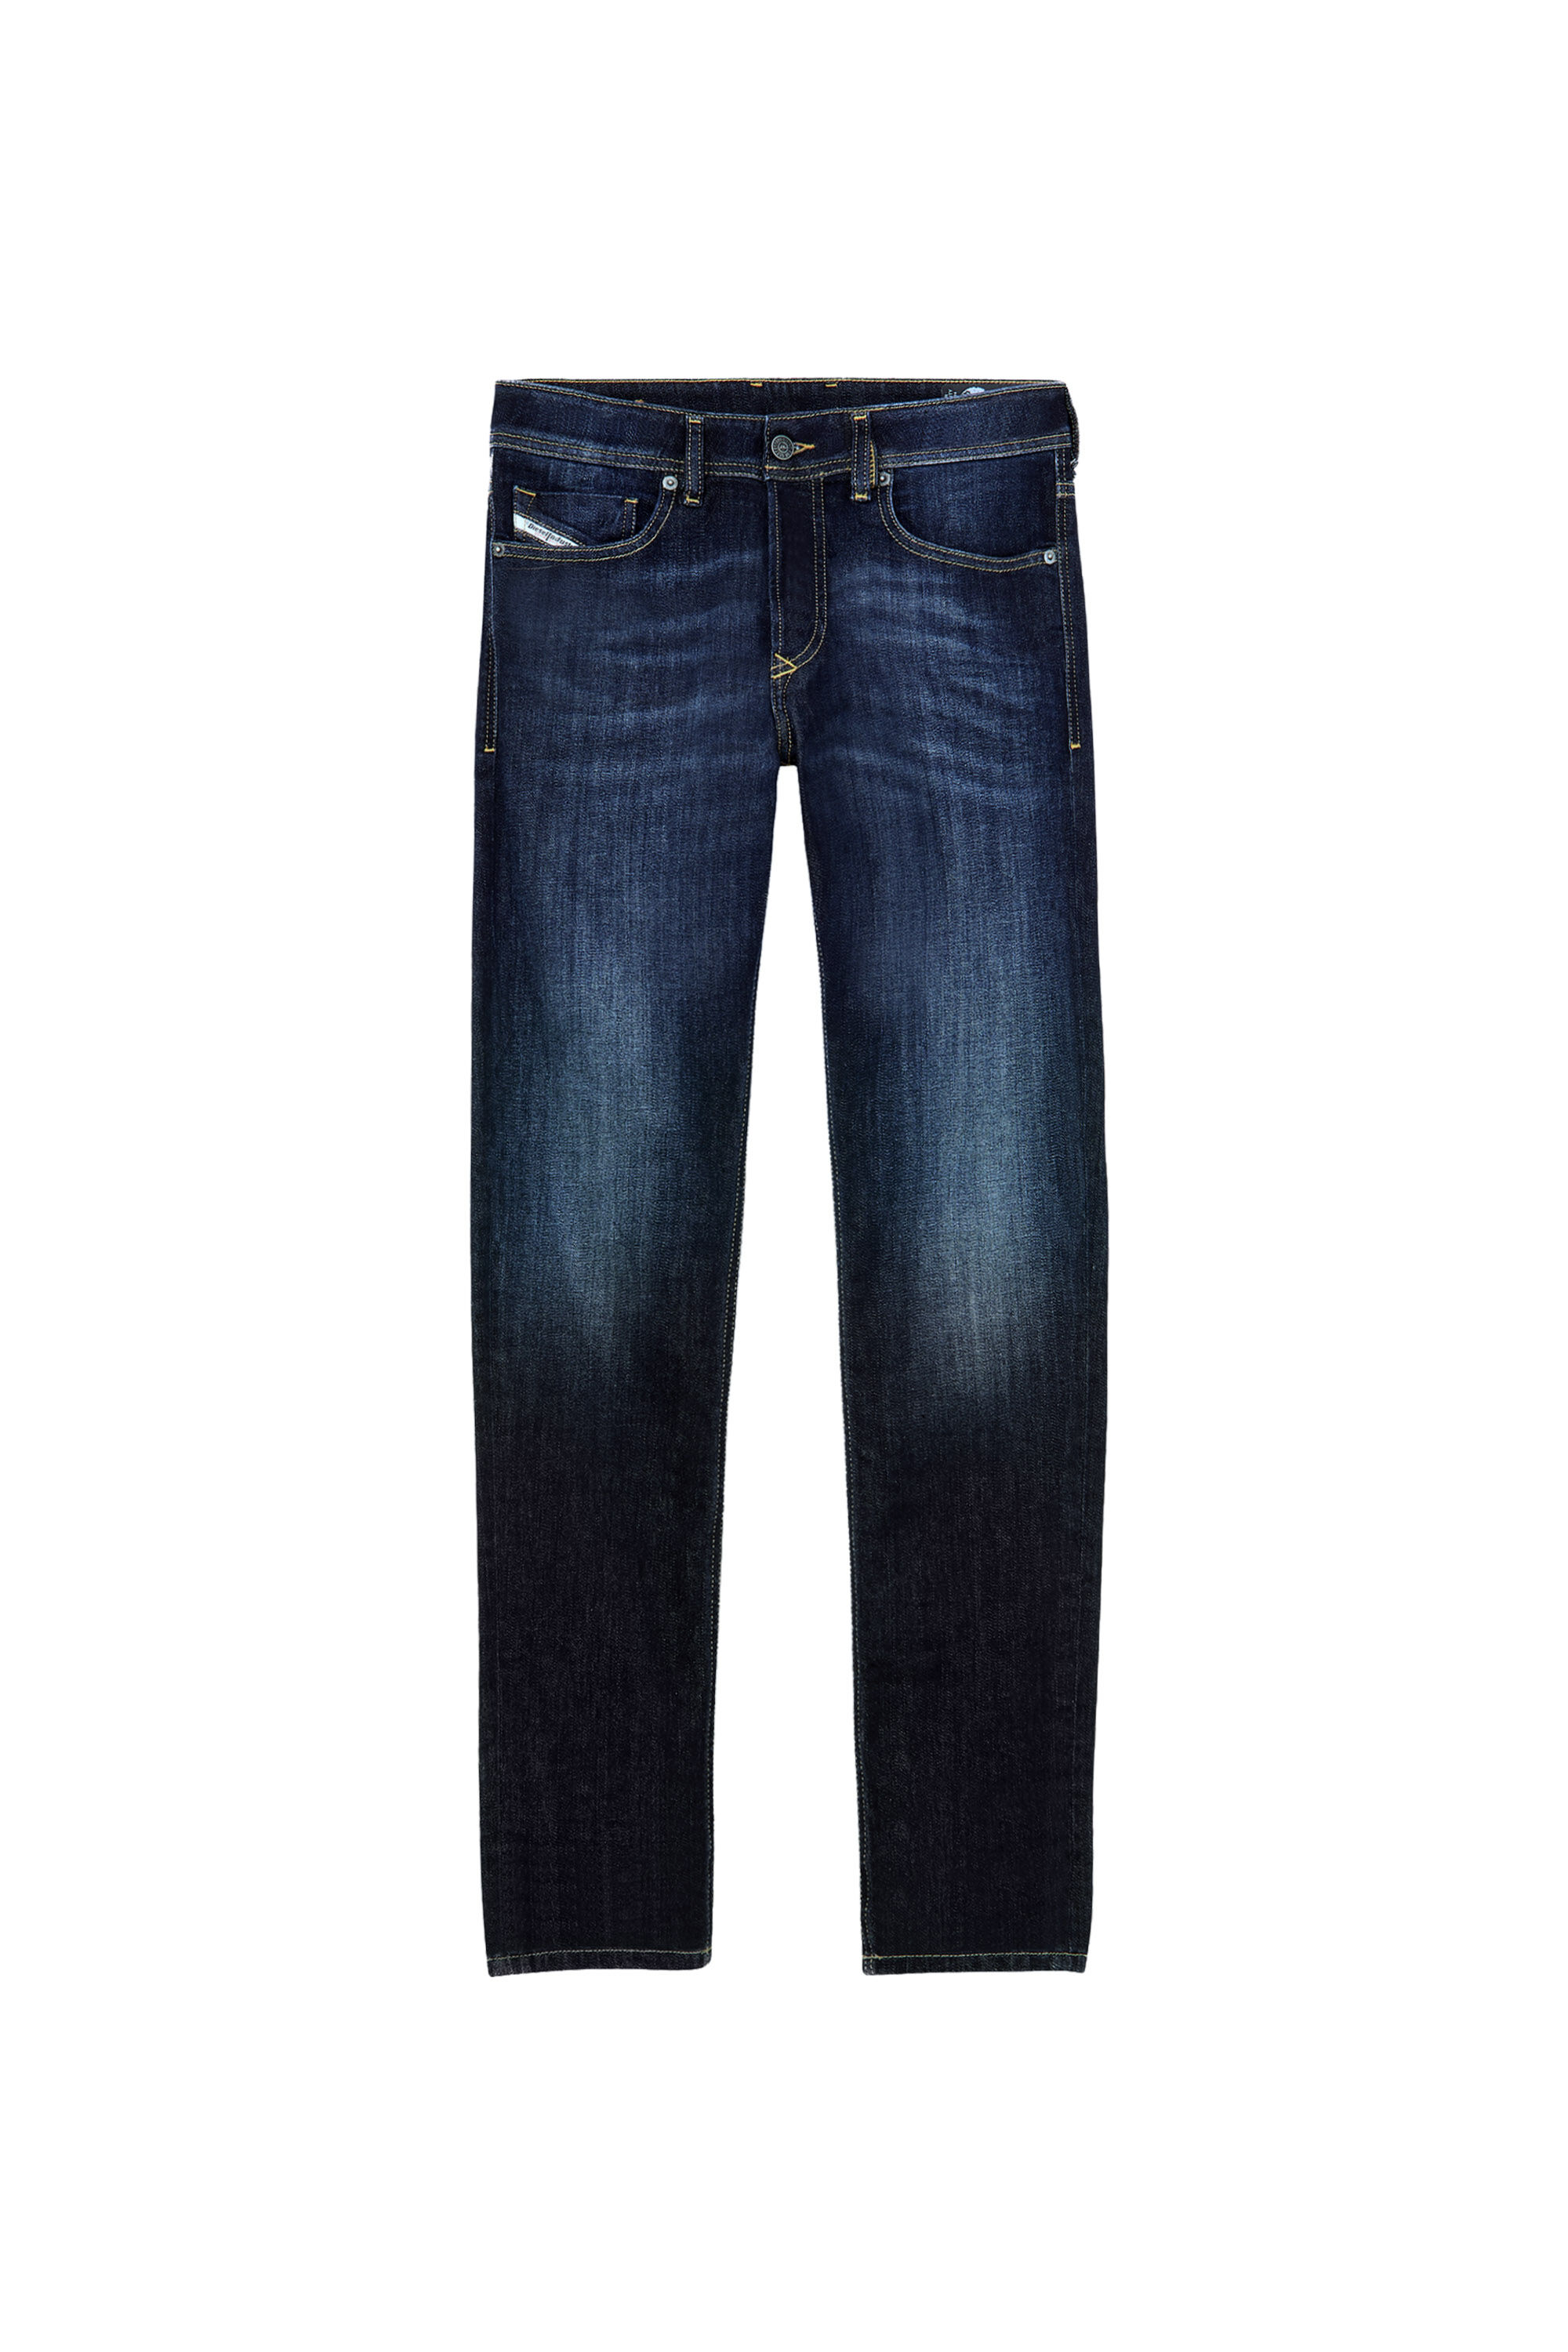 Diesel - Skinny Jeans 1979 Sleenker 009EY,  - Image 2